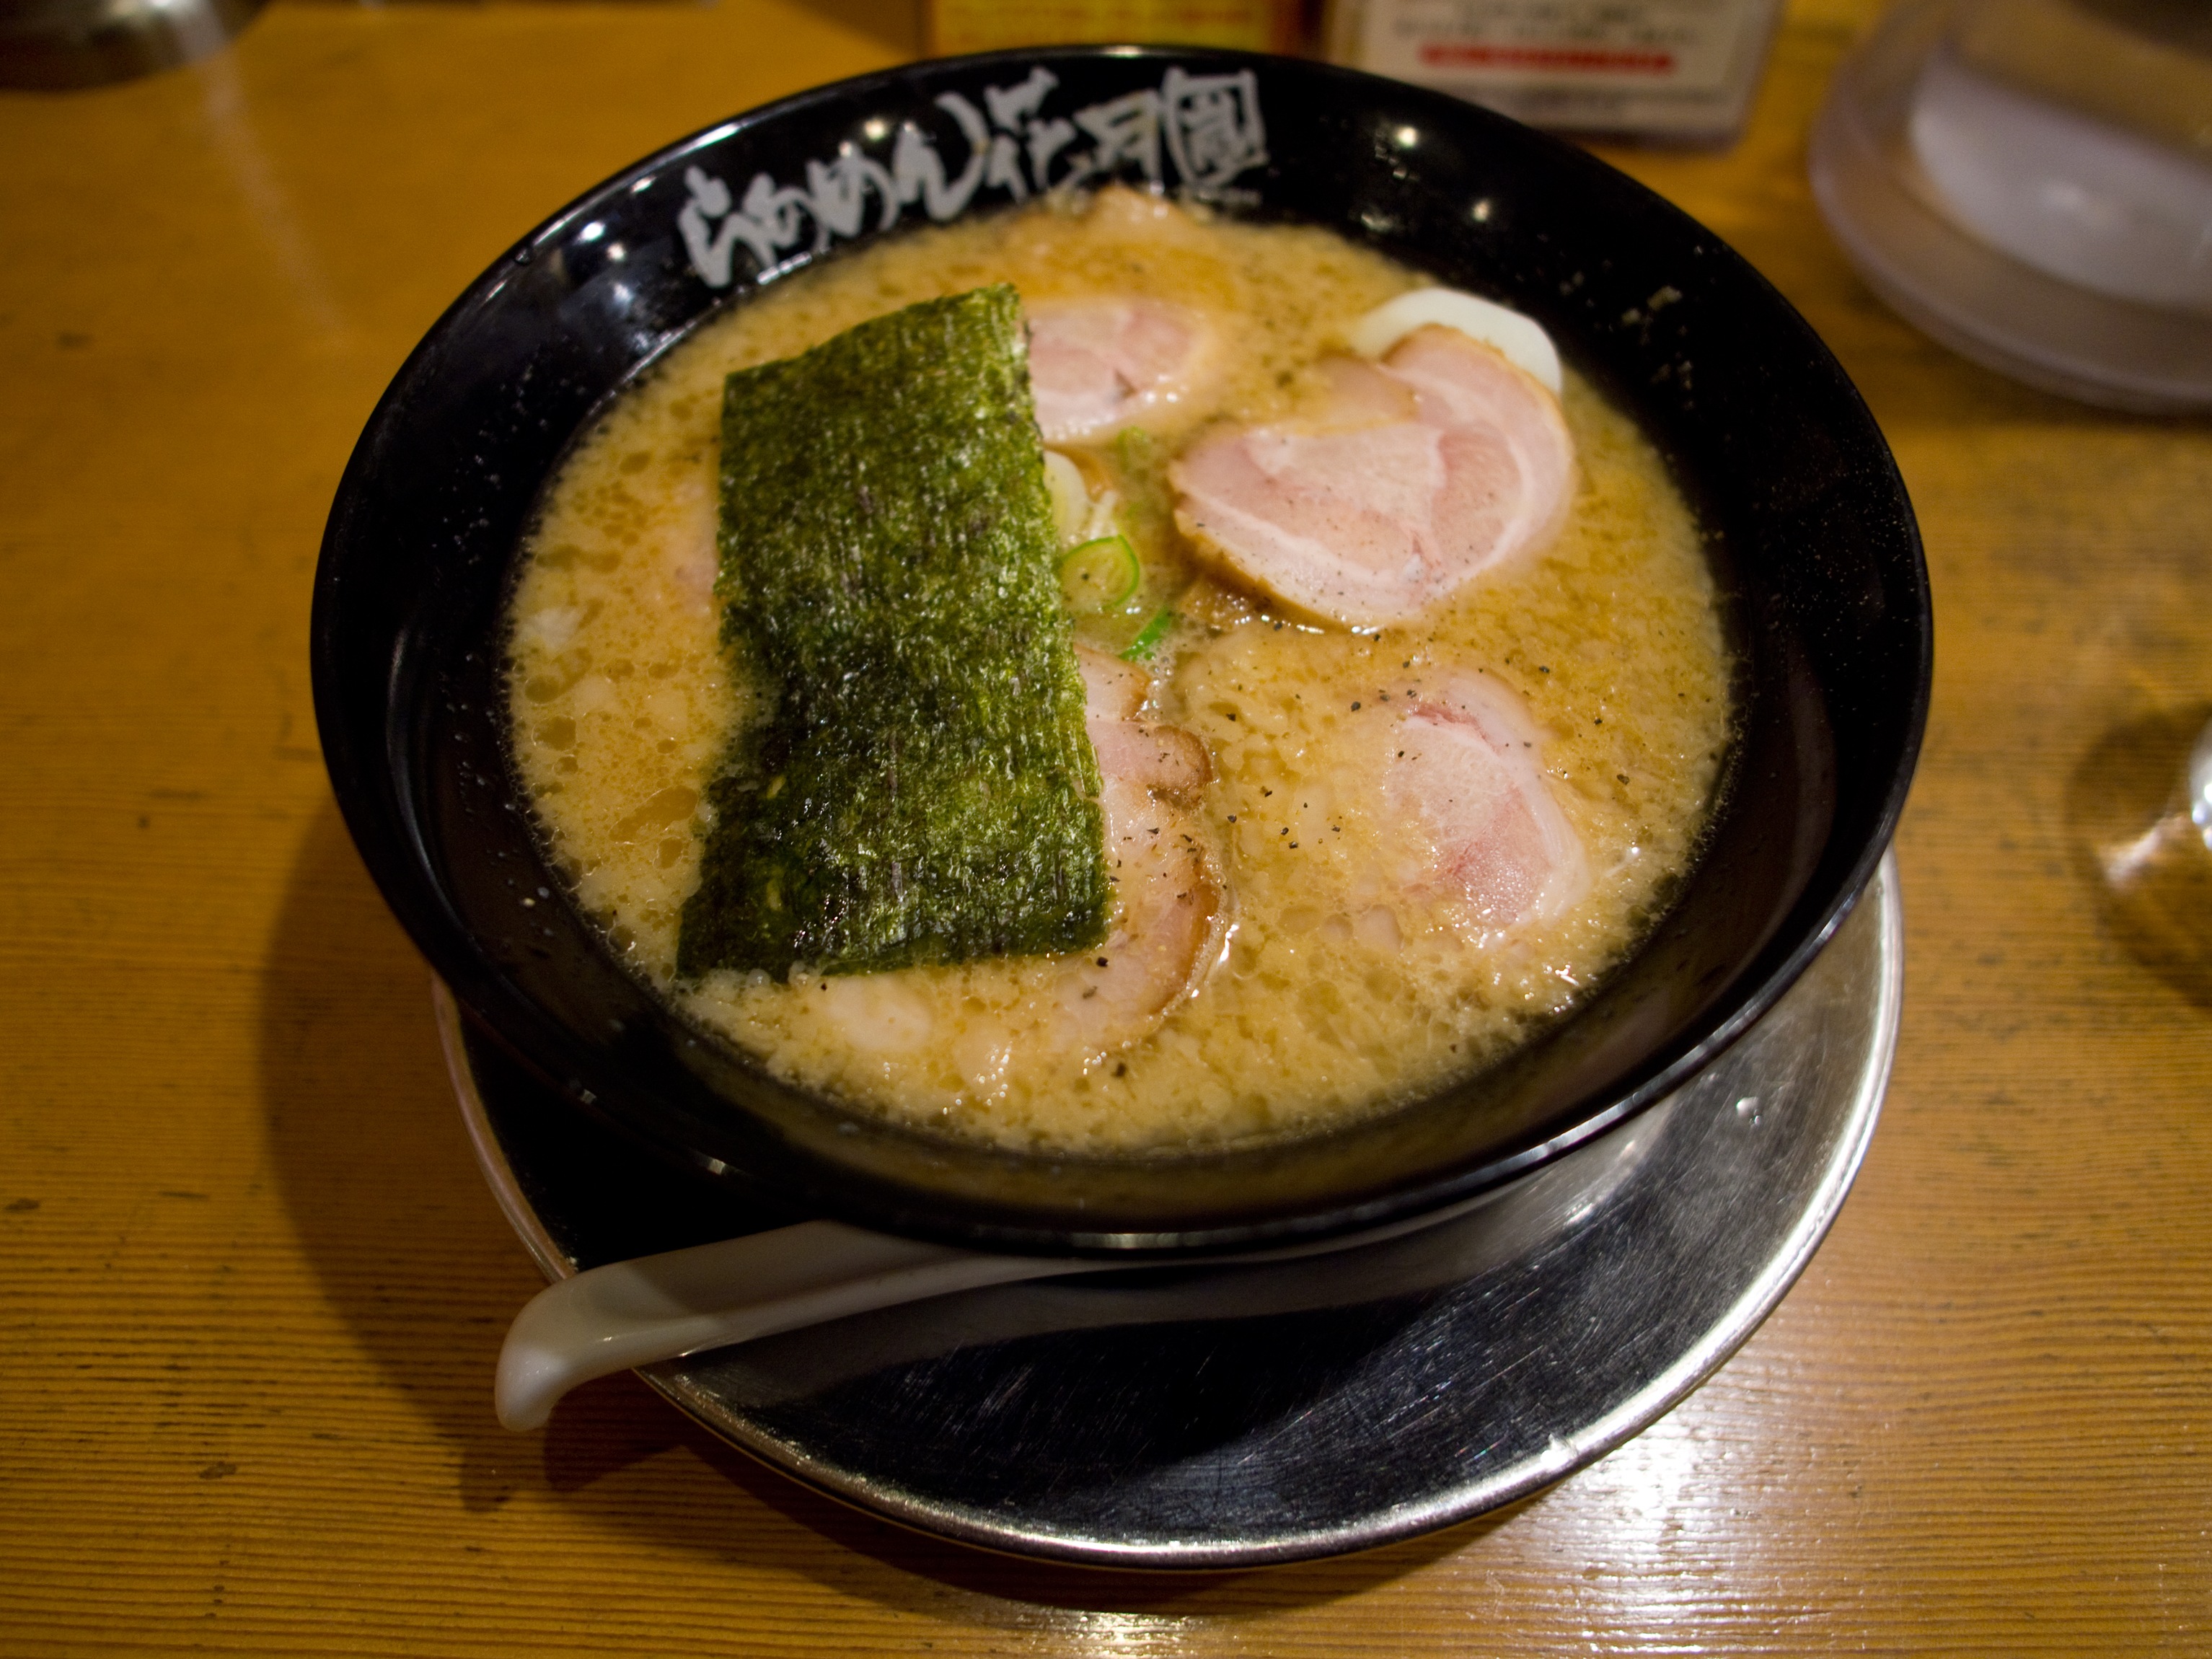 田無駅周辺でラーメンを食べるなら 地元民おすすめランキングトップ9 Travelnote トラベルノート